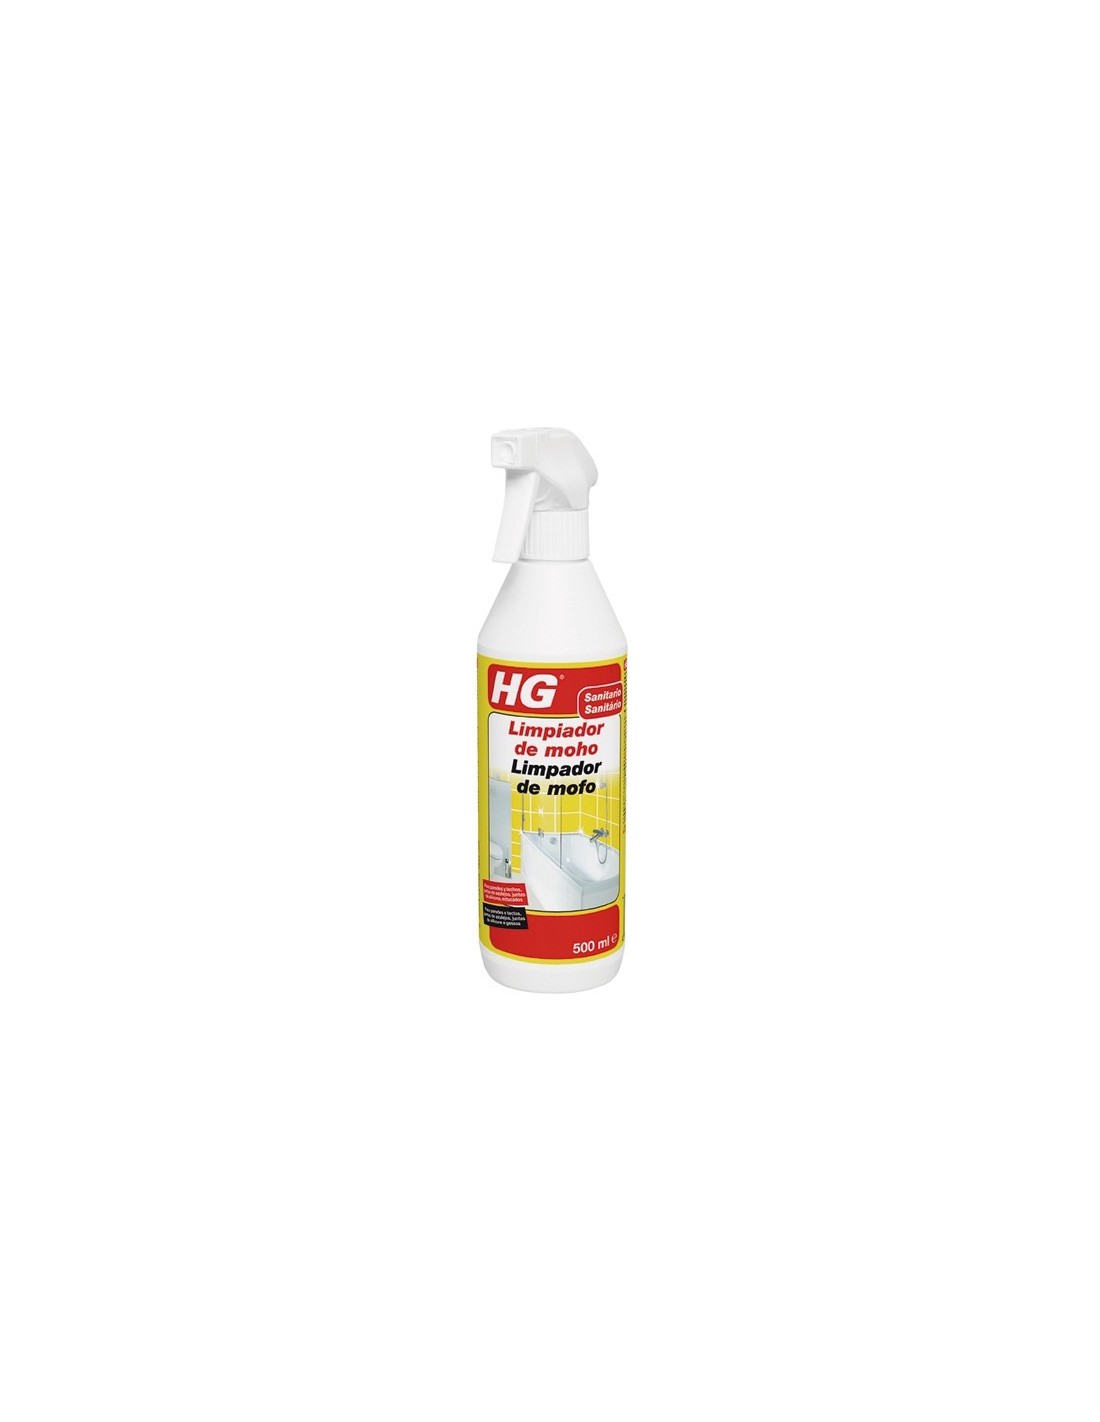 Limpiador de moho - 500 ml - HG